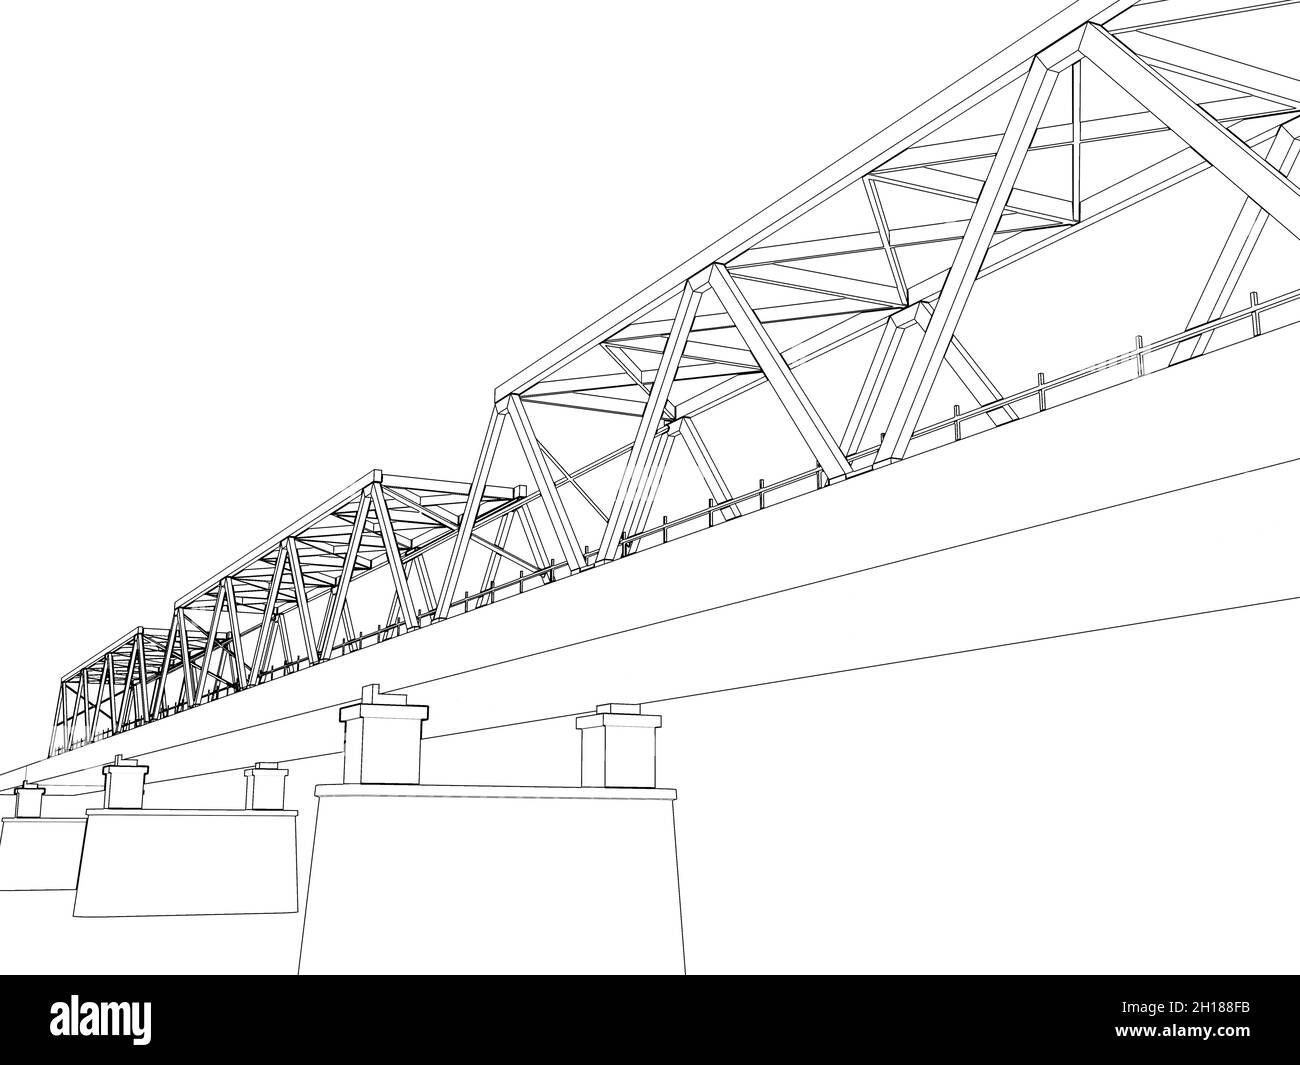 Truss bridge model fragment. Outline frame model over white background, 3d rendering illustration Stock Photo